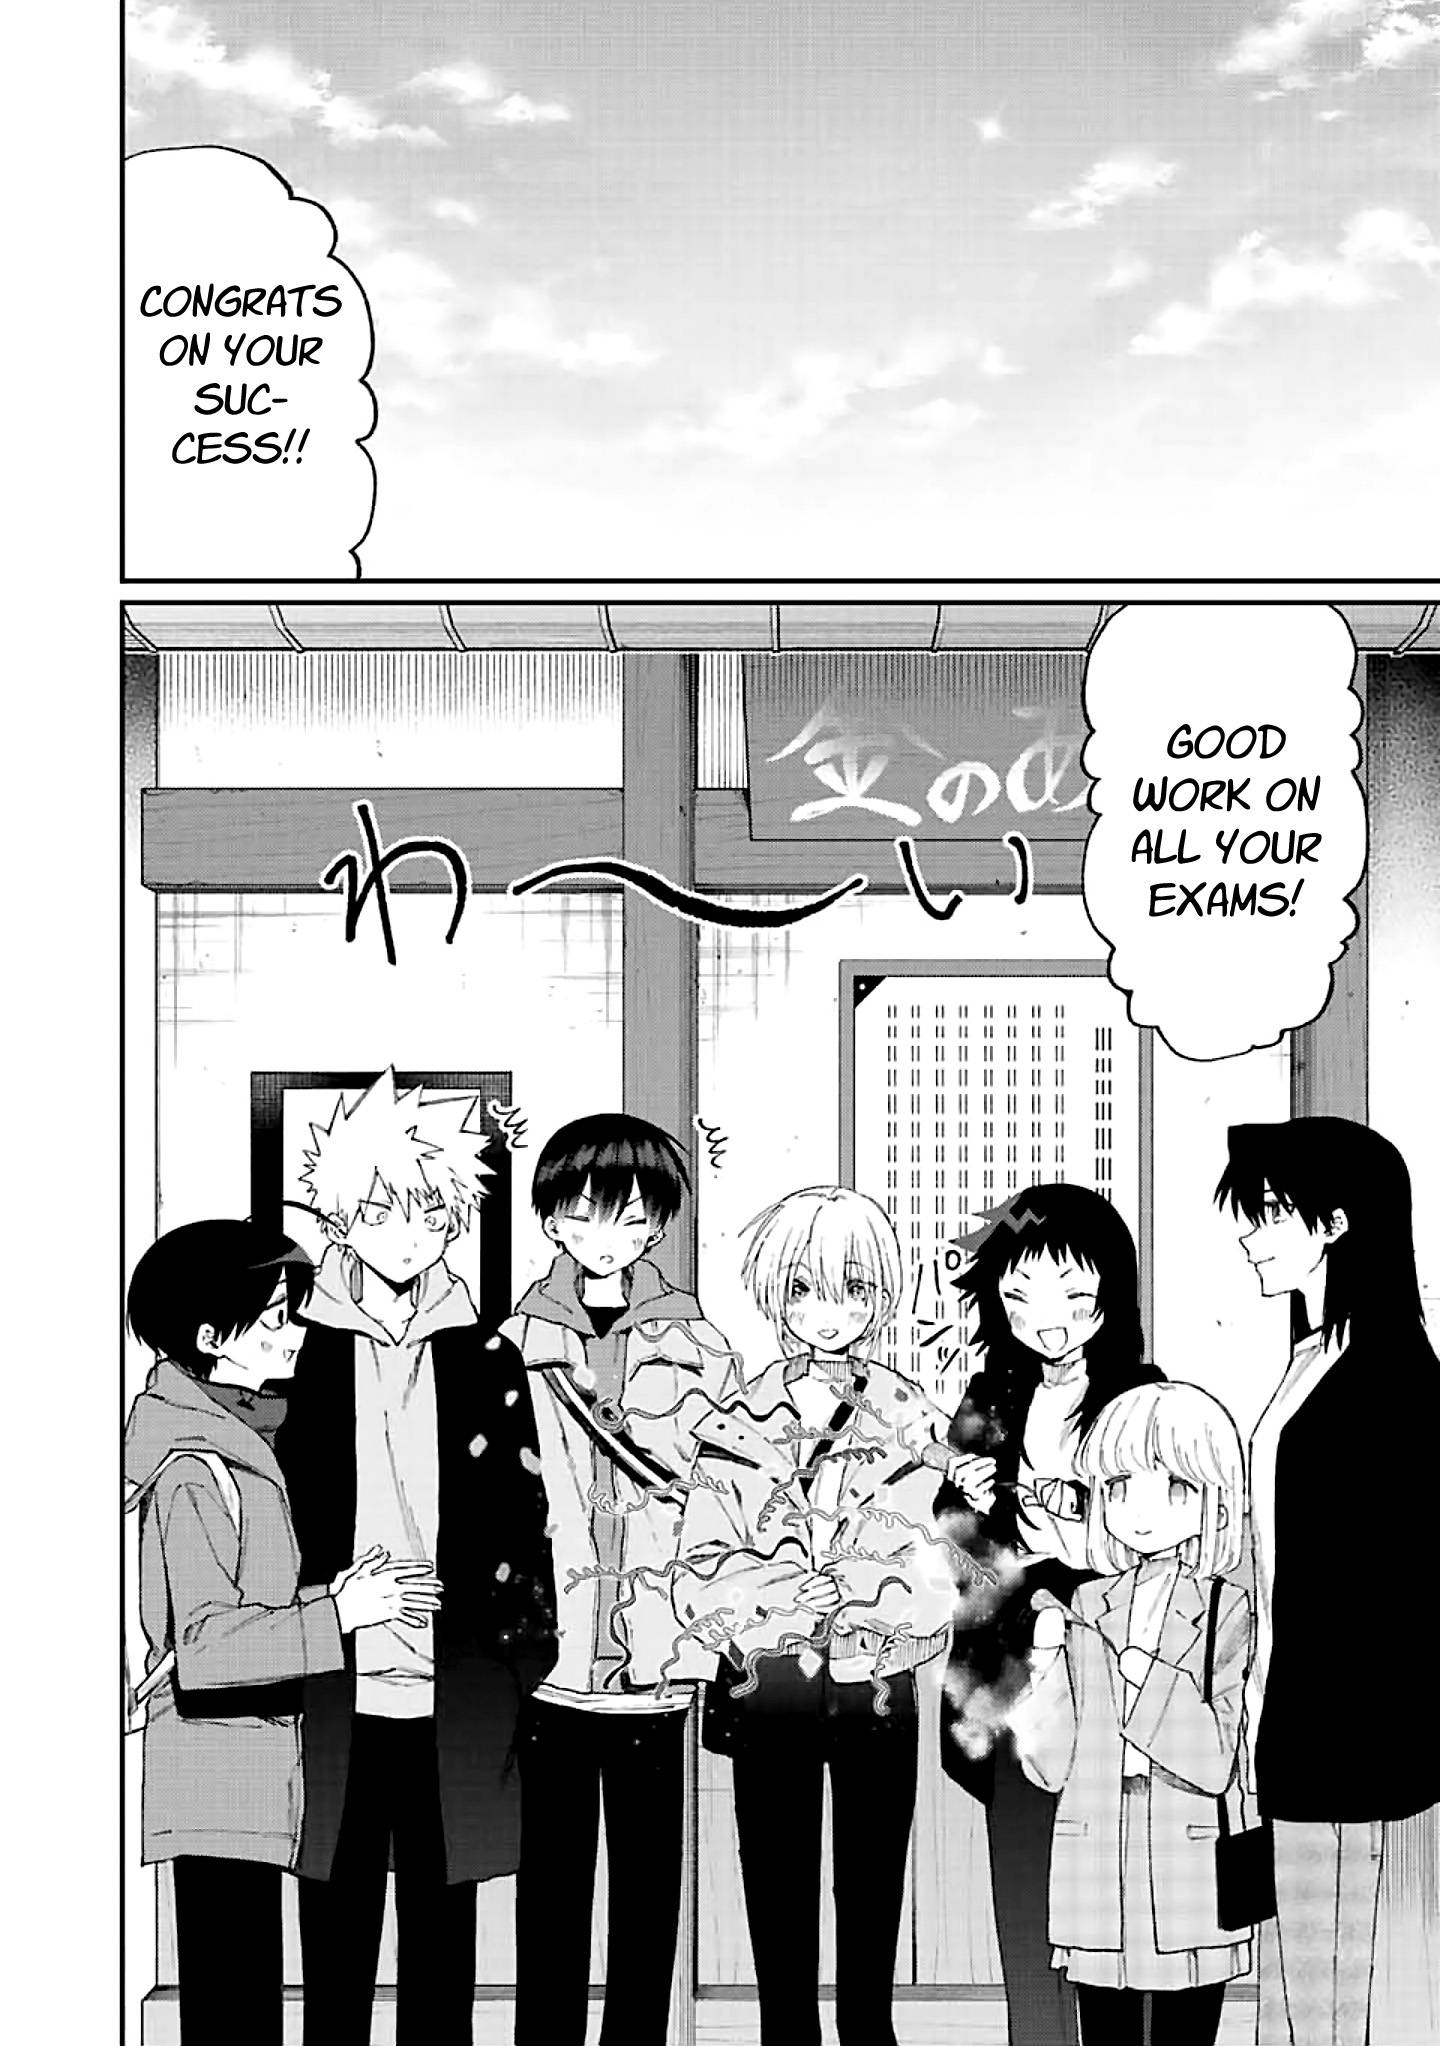 Shikimori's Not Just A Cutie - chapter 171 - #2